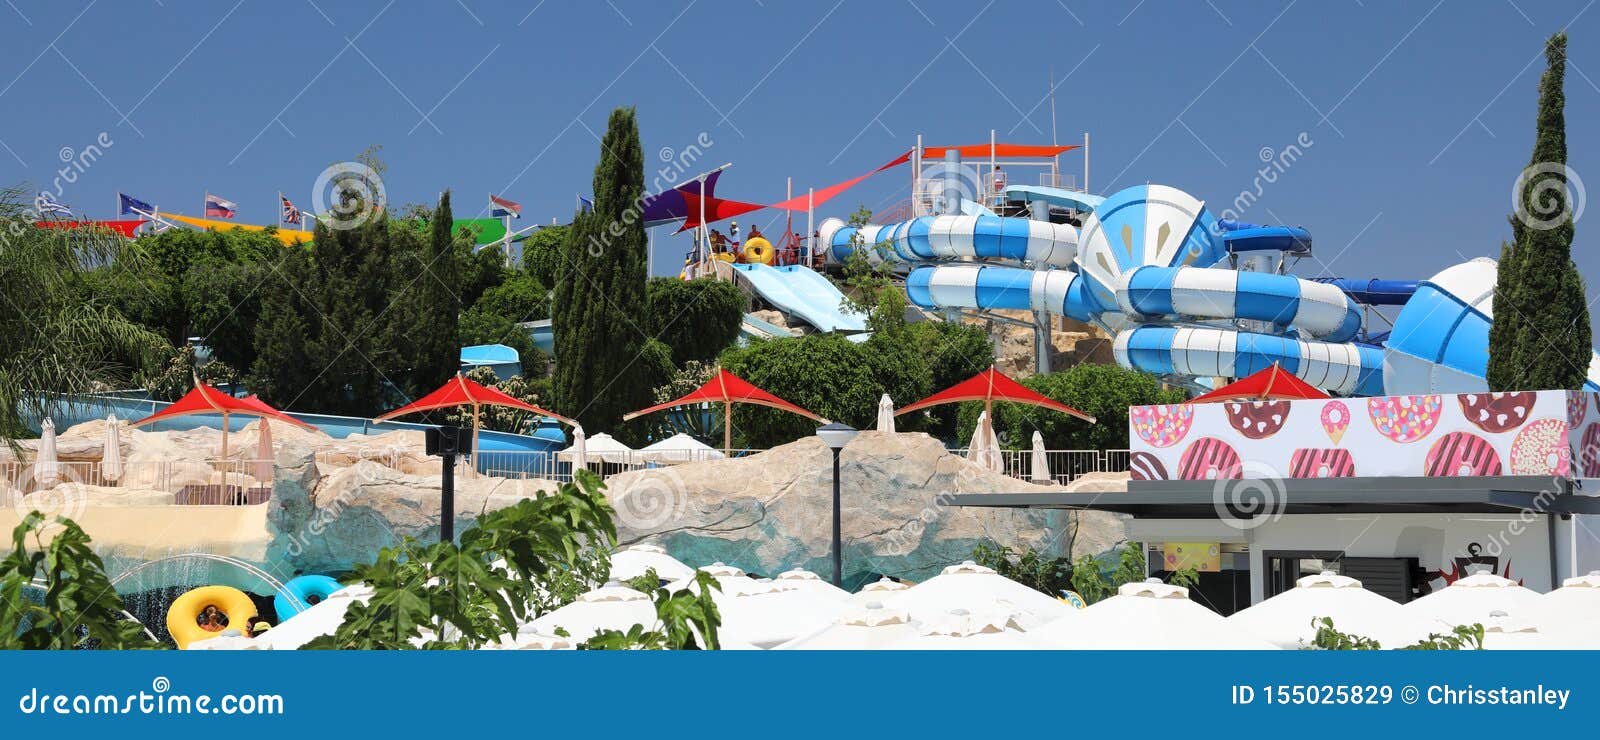 water park in paphos cyprus